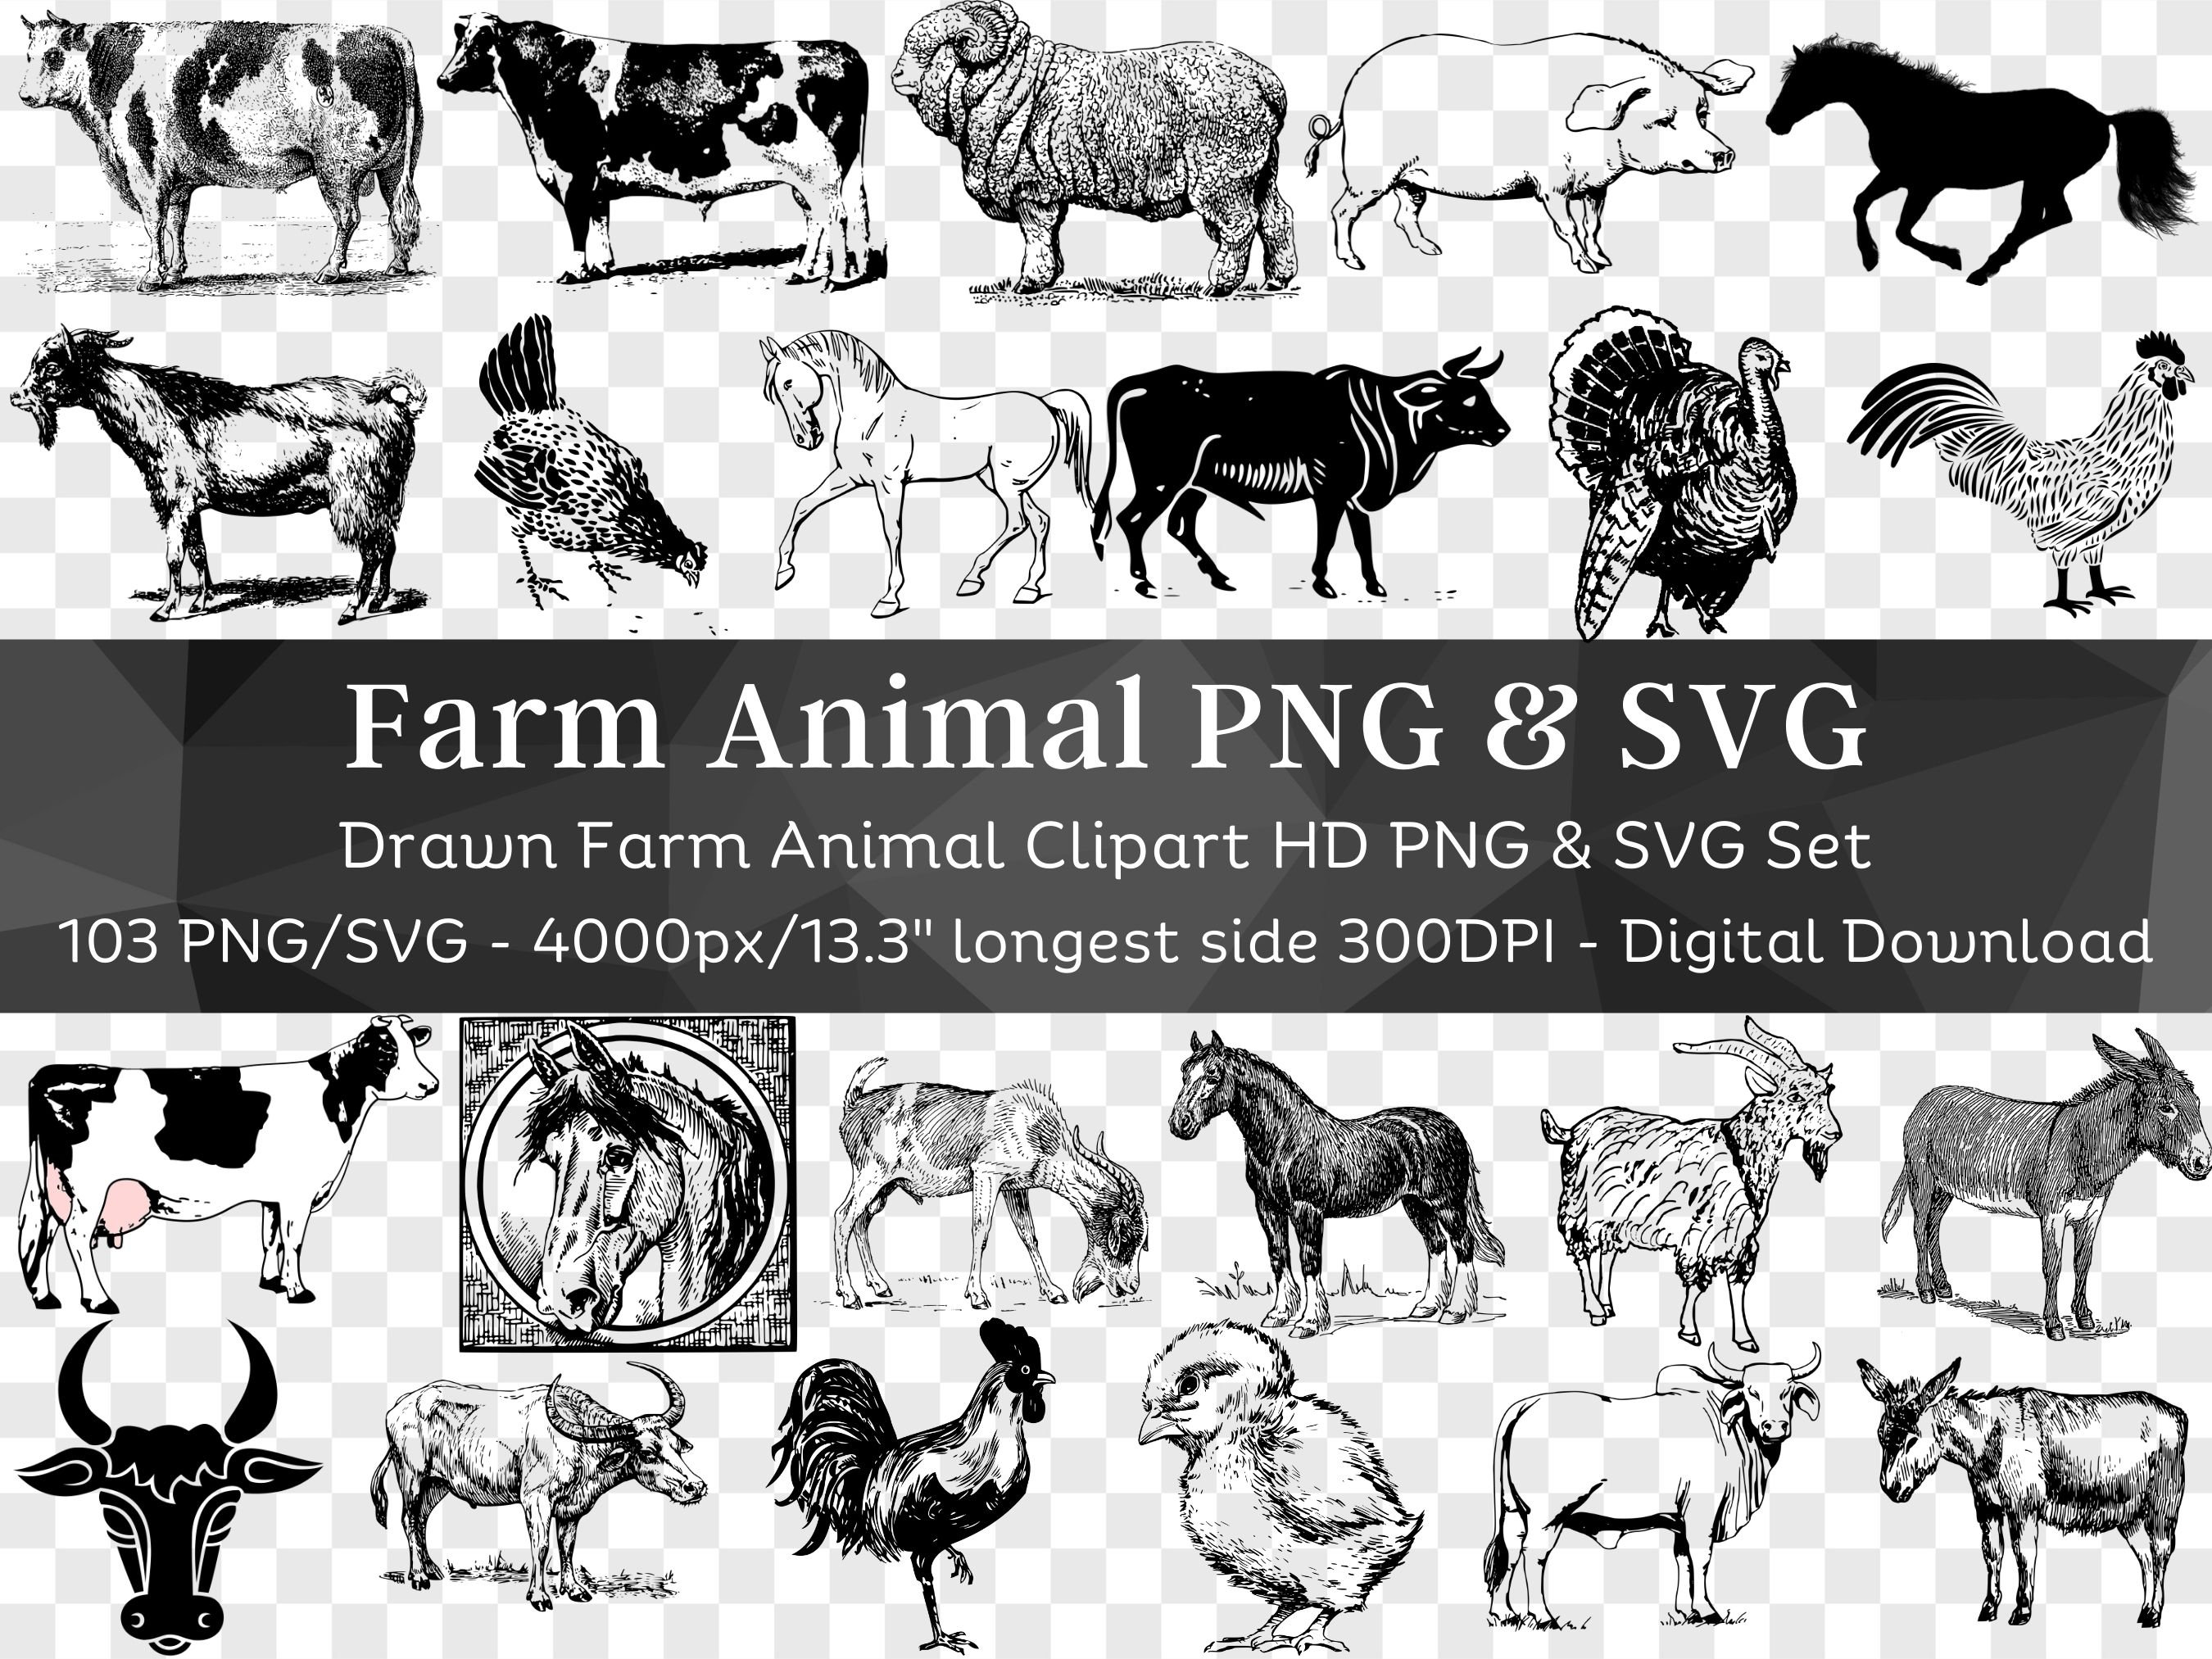 Wild Animals Bundle Animals SVG84 Wild Animals (Download Now) 